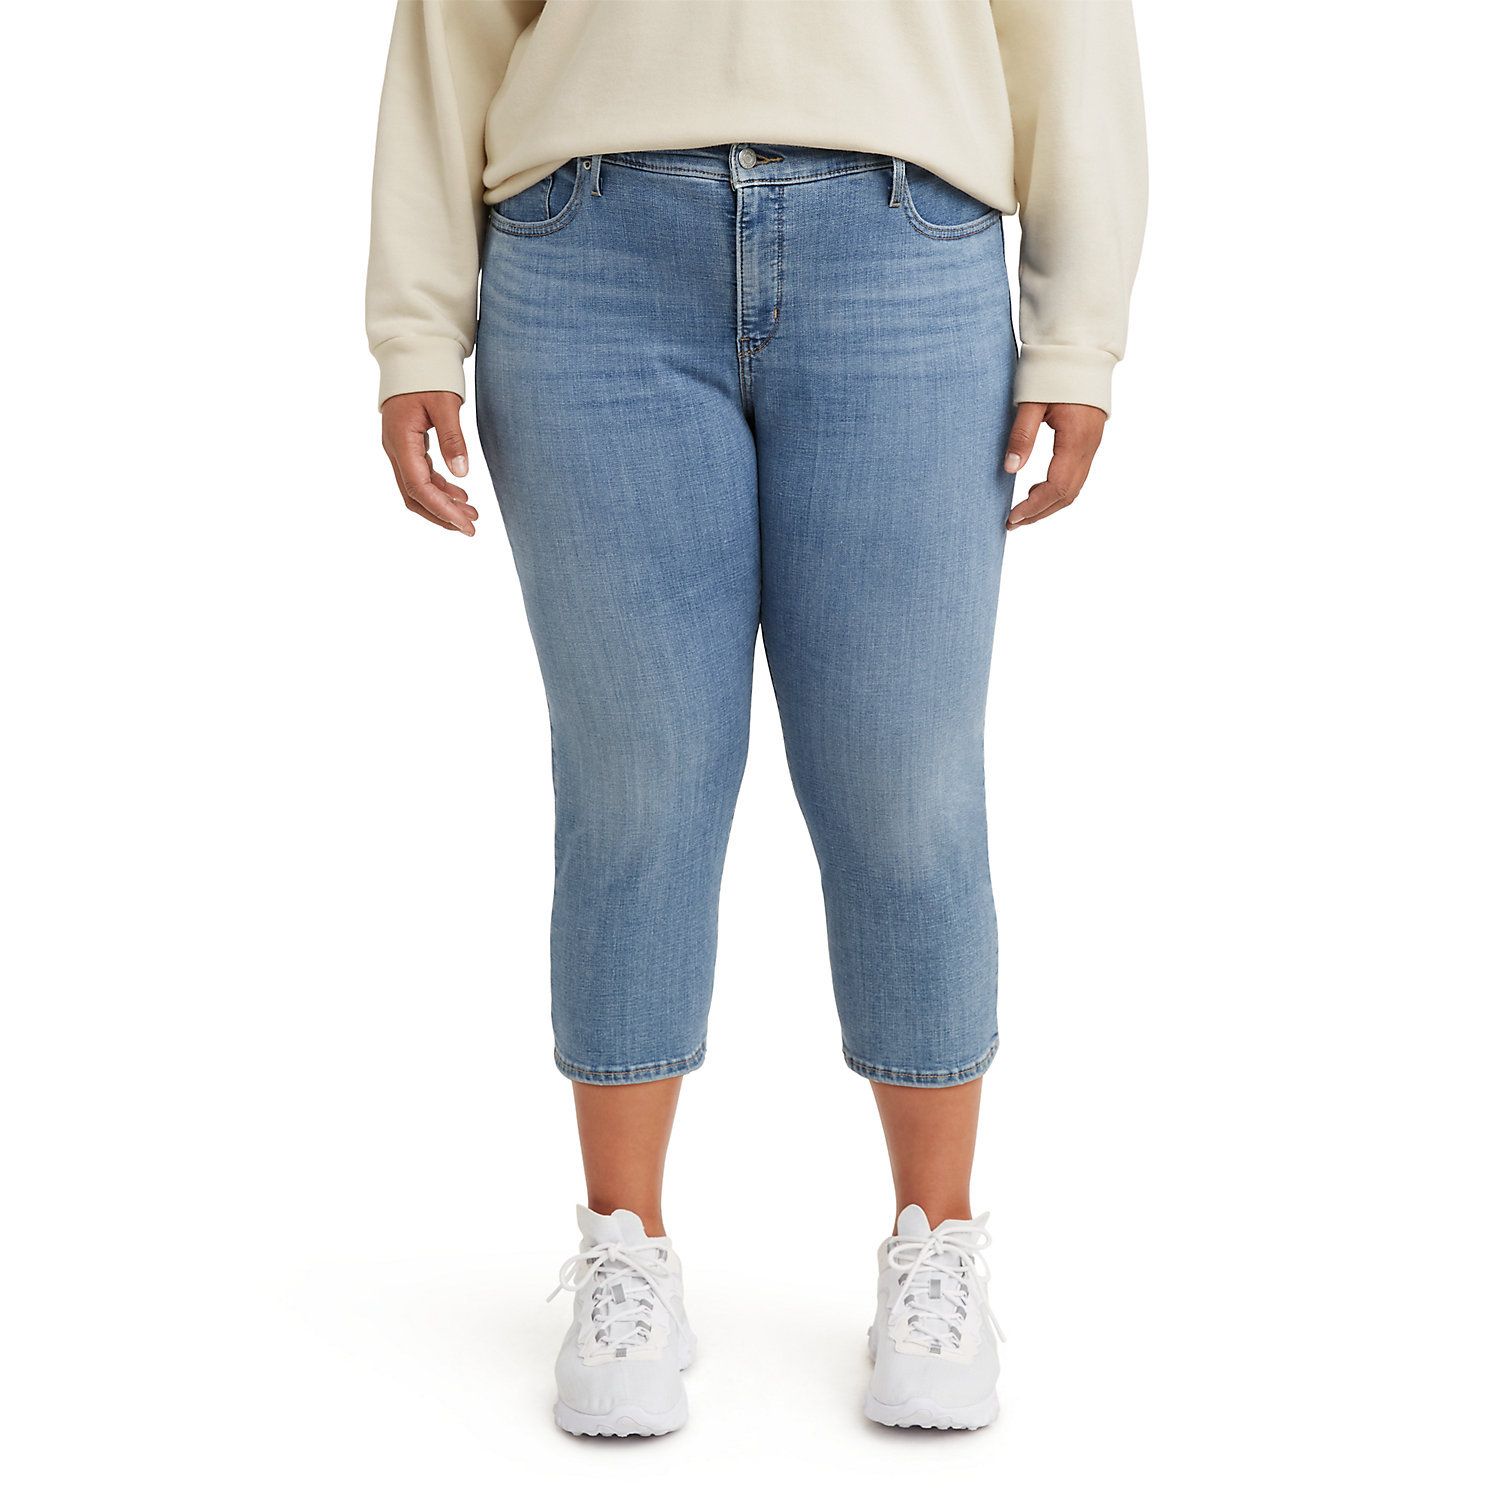 Women's Modern Pull-On Capri Jeans 